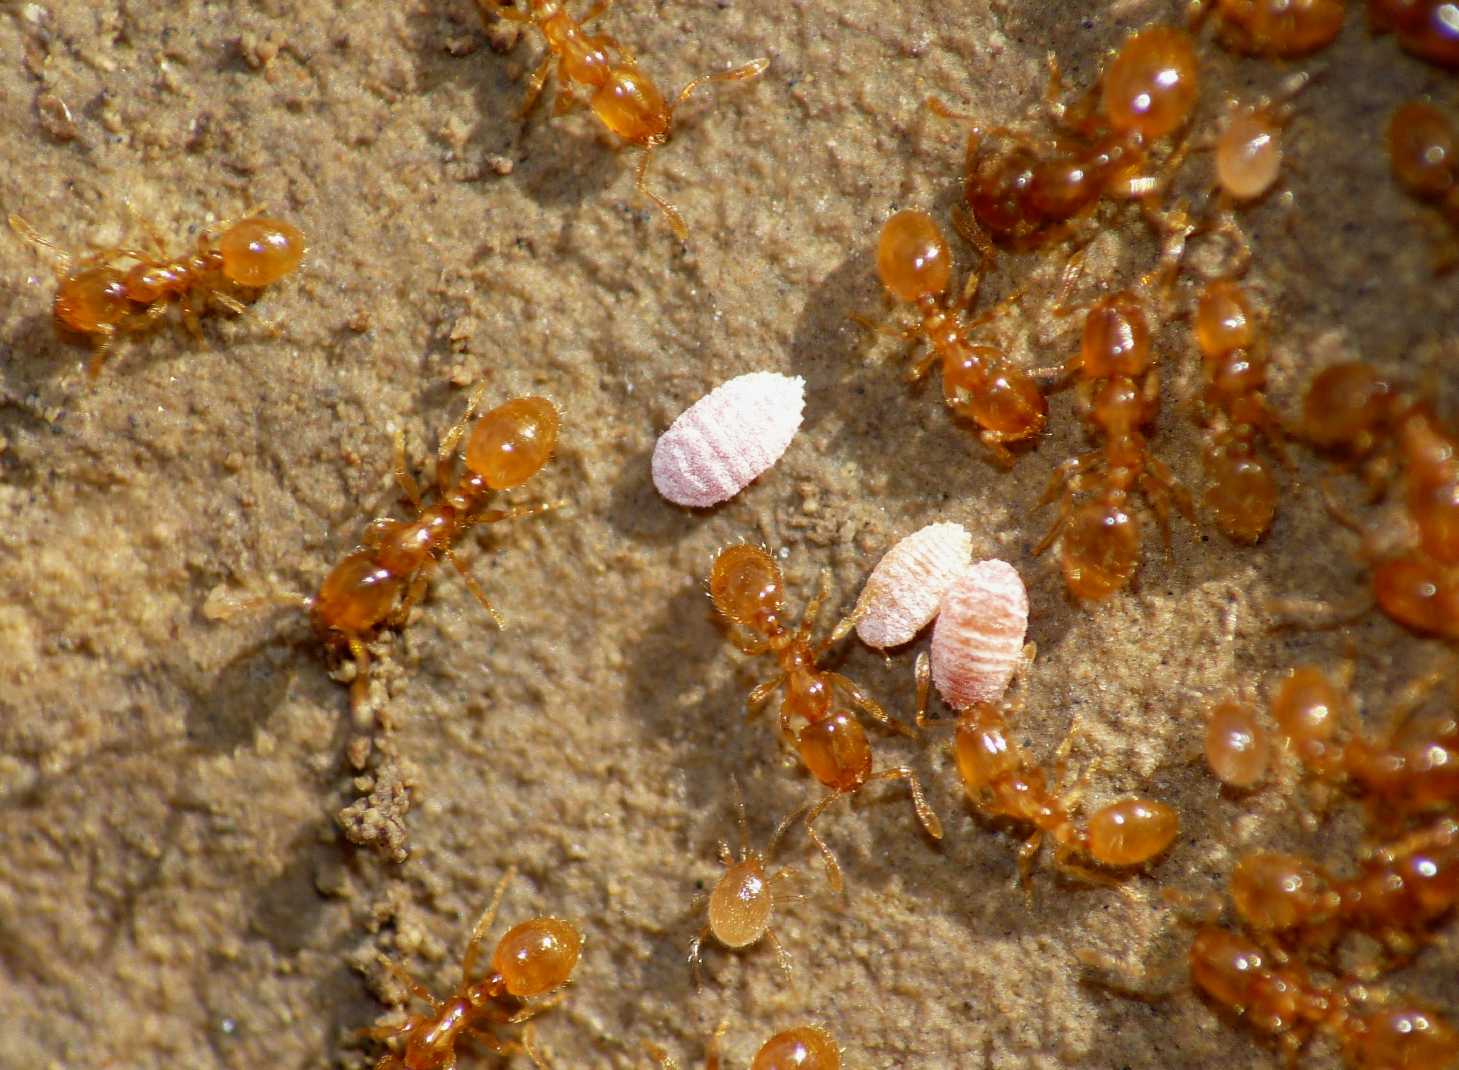 Ospiti delle formiche Solenopsis (Micrococcus Leonardi?)